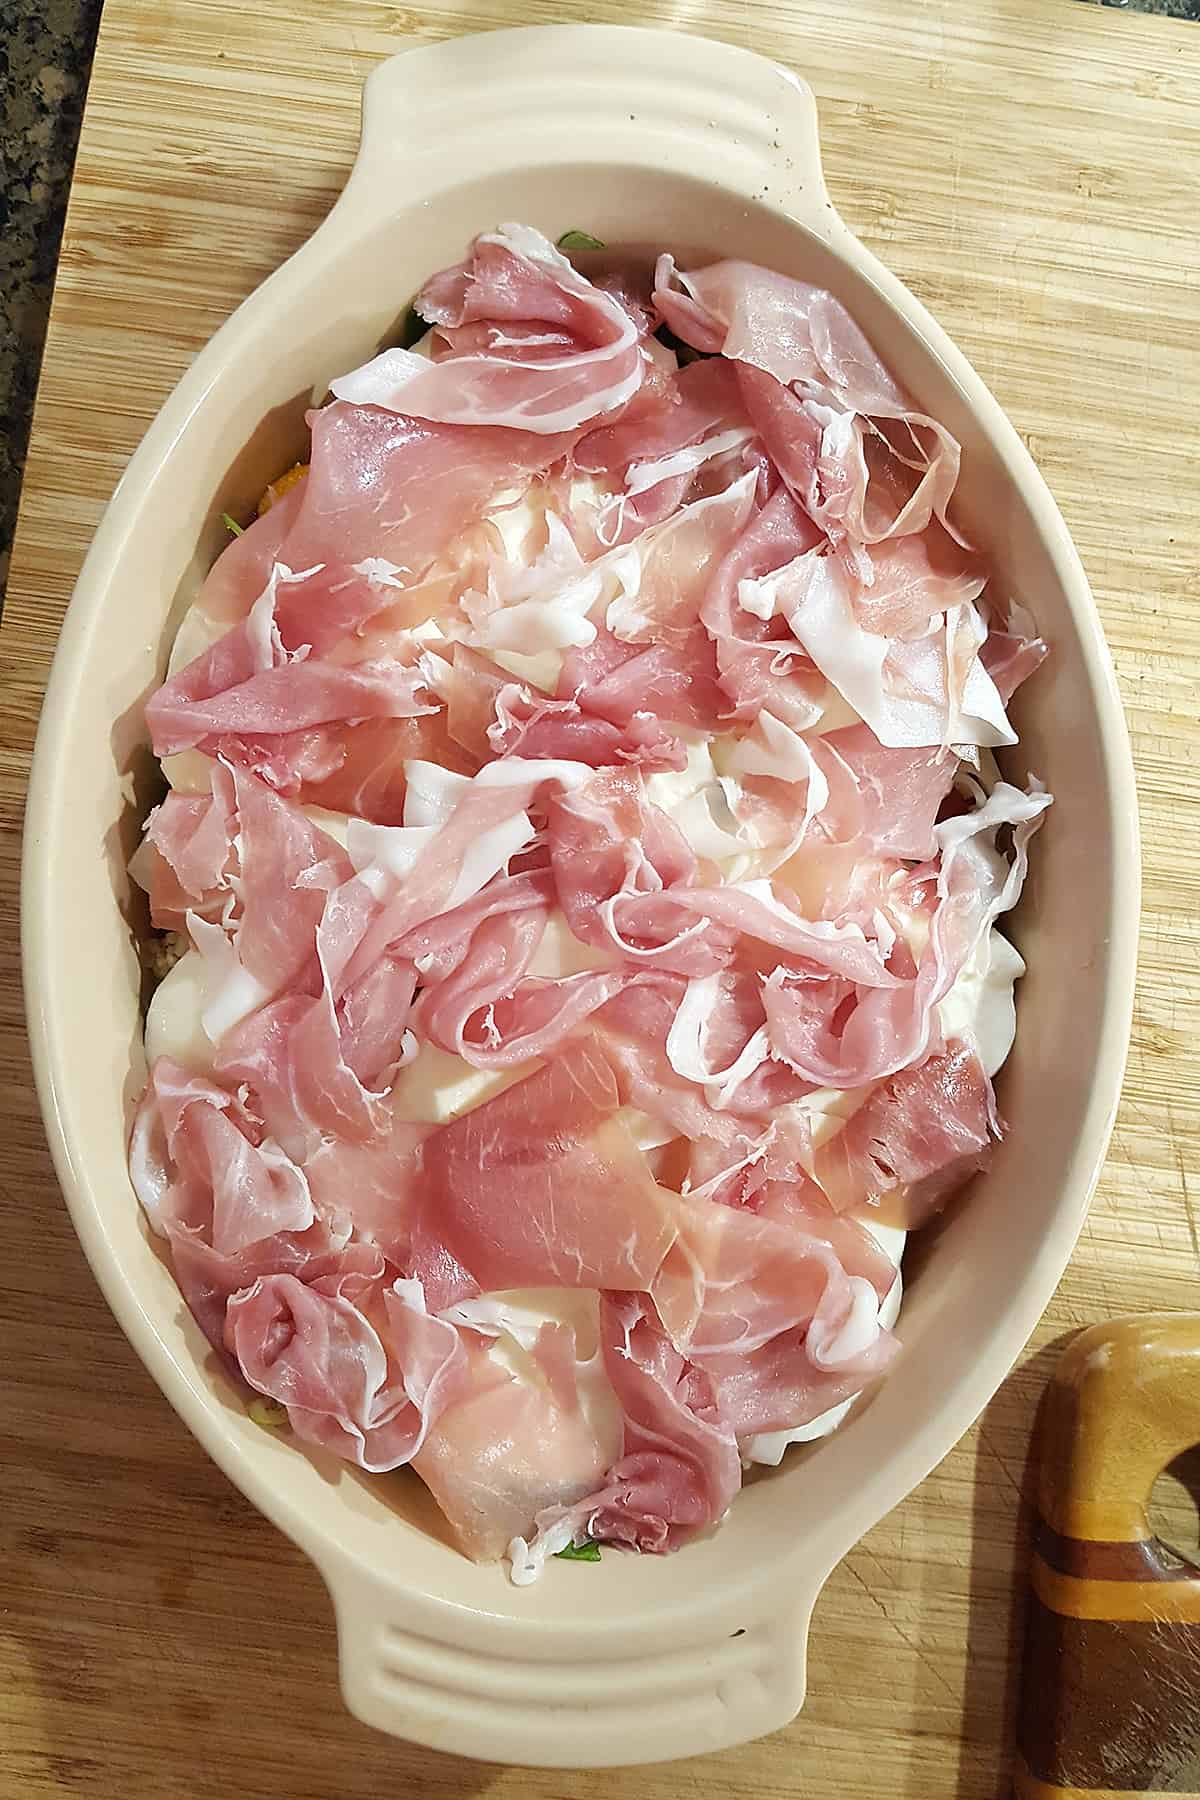 Shredded prosciutto over mozzarella, tomatoes, herbs, onions, and garlic